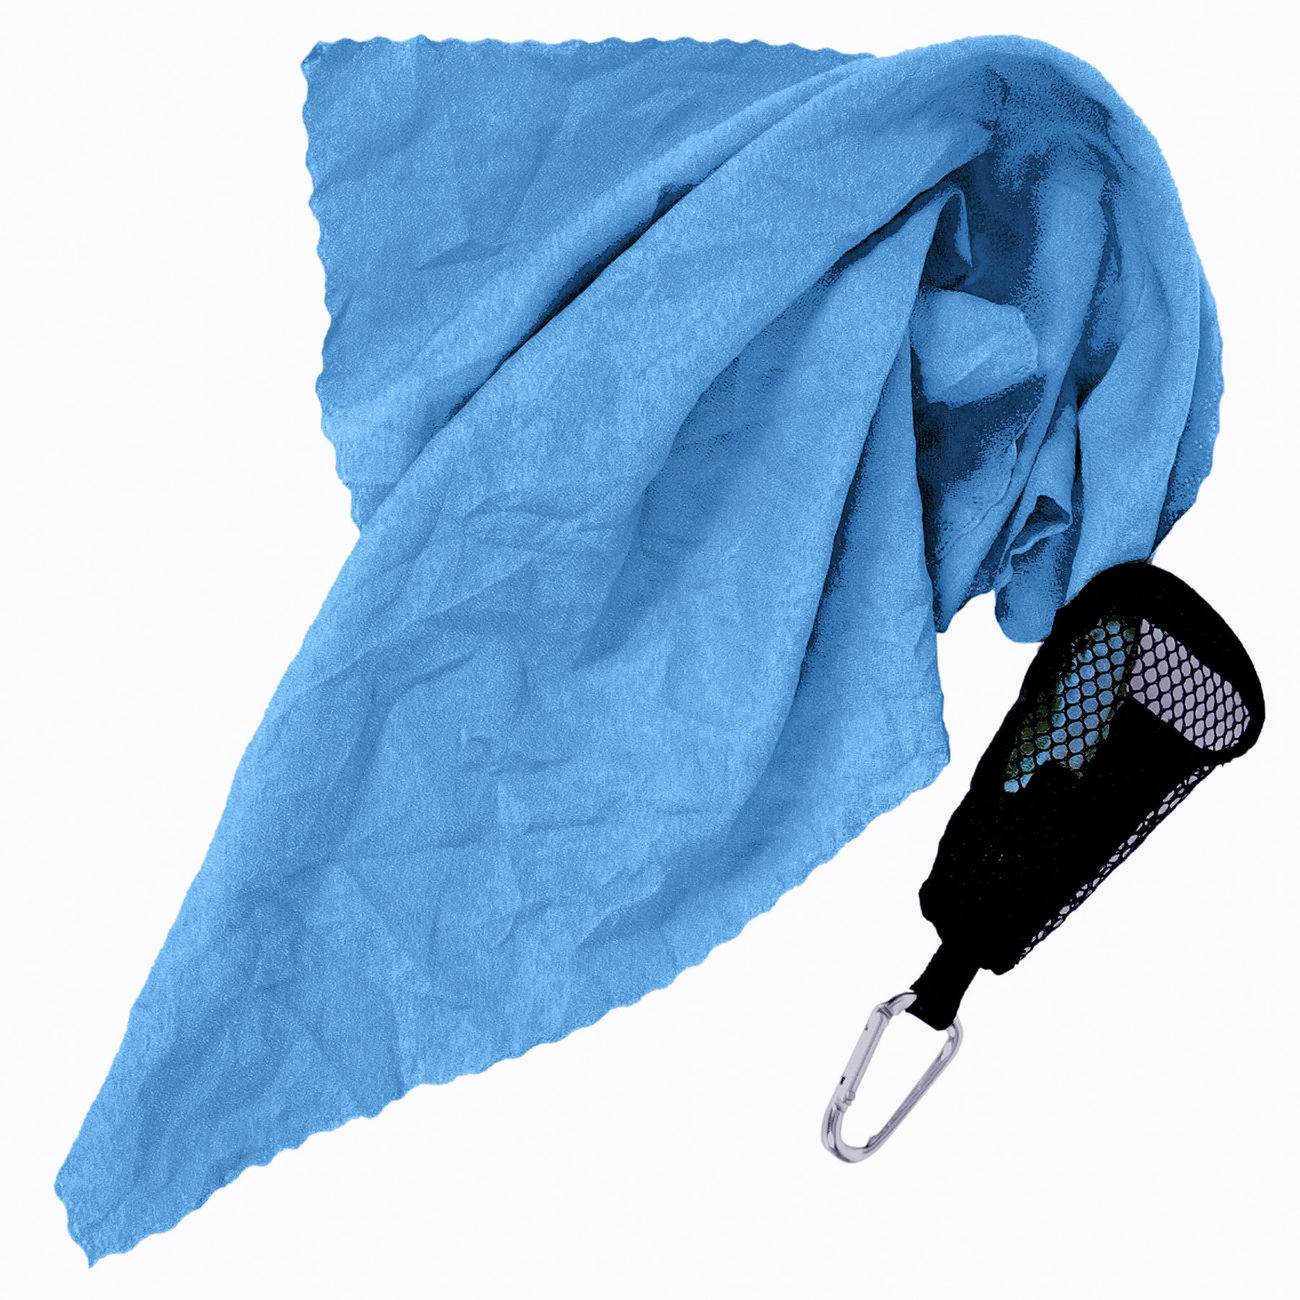 Relags Mini Handtuch 40 x 40 cm inkl. Karabiner-Netzbeutel blau Bild 1